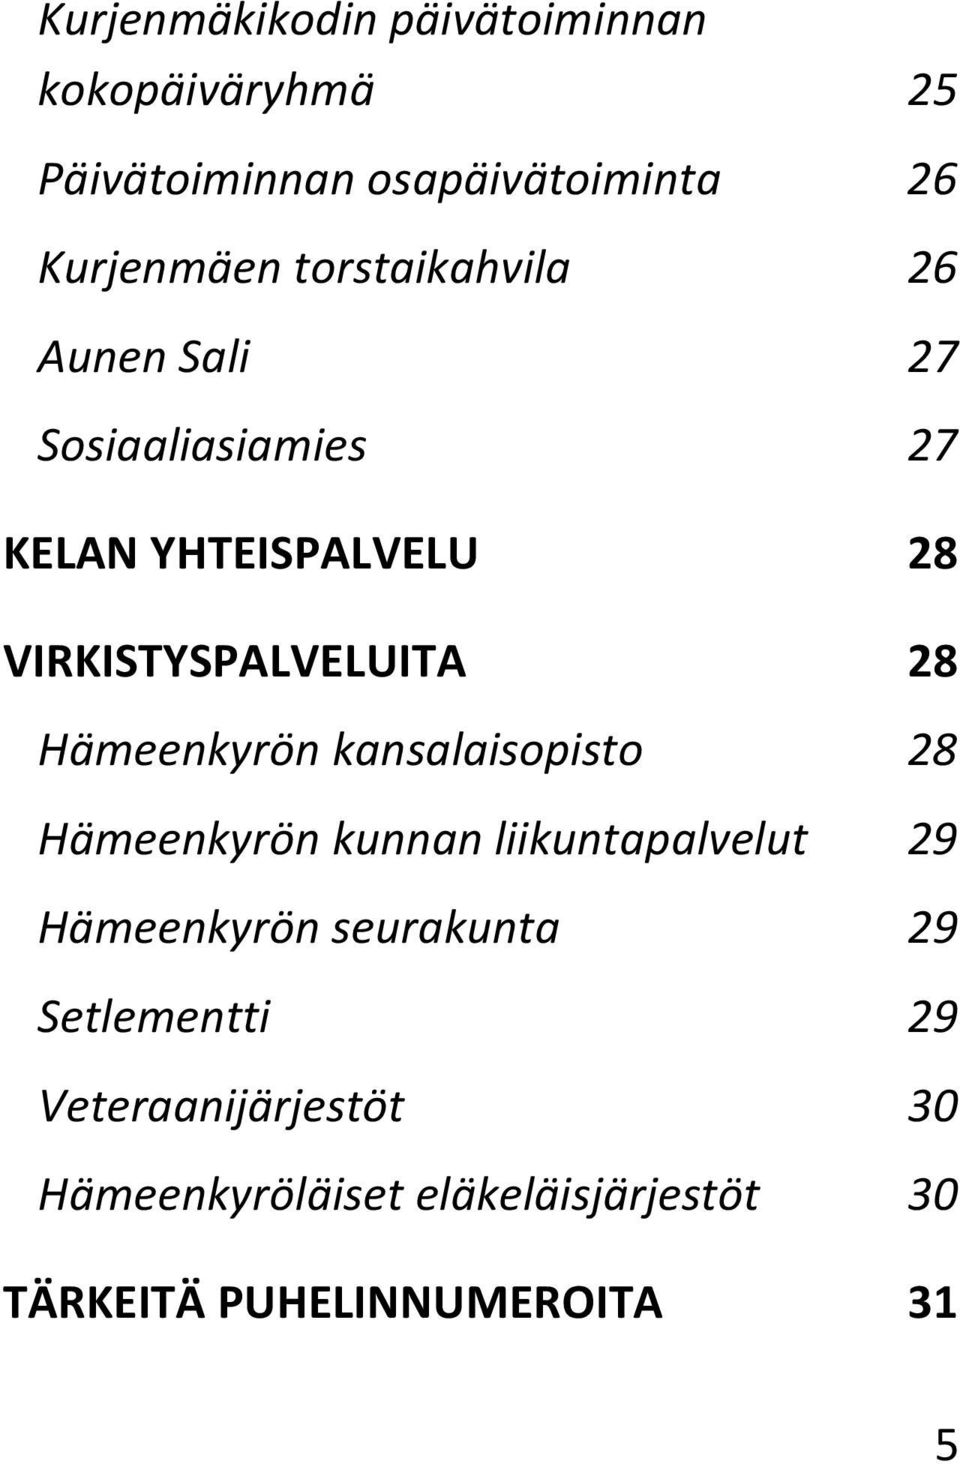 Hämeenkyrön kansalaisopisto 28 Hämeenkyrön kunnan liikuntapalvelut 29 Hämeenkyrön seurakunta 29